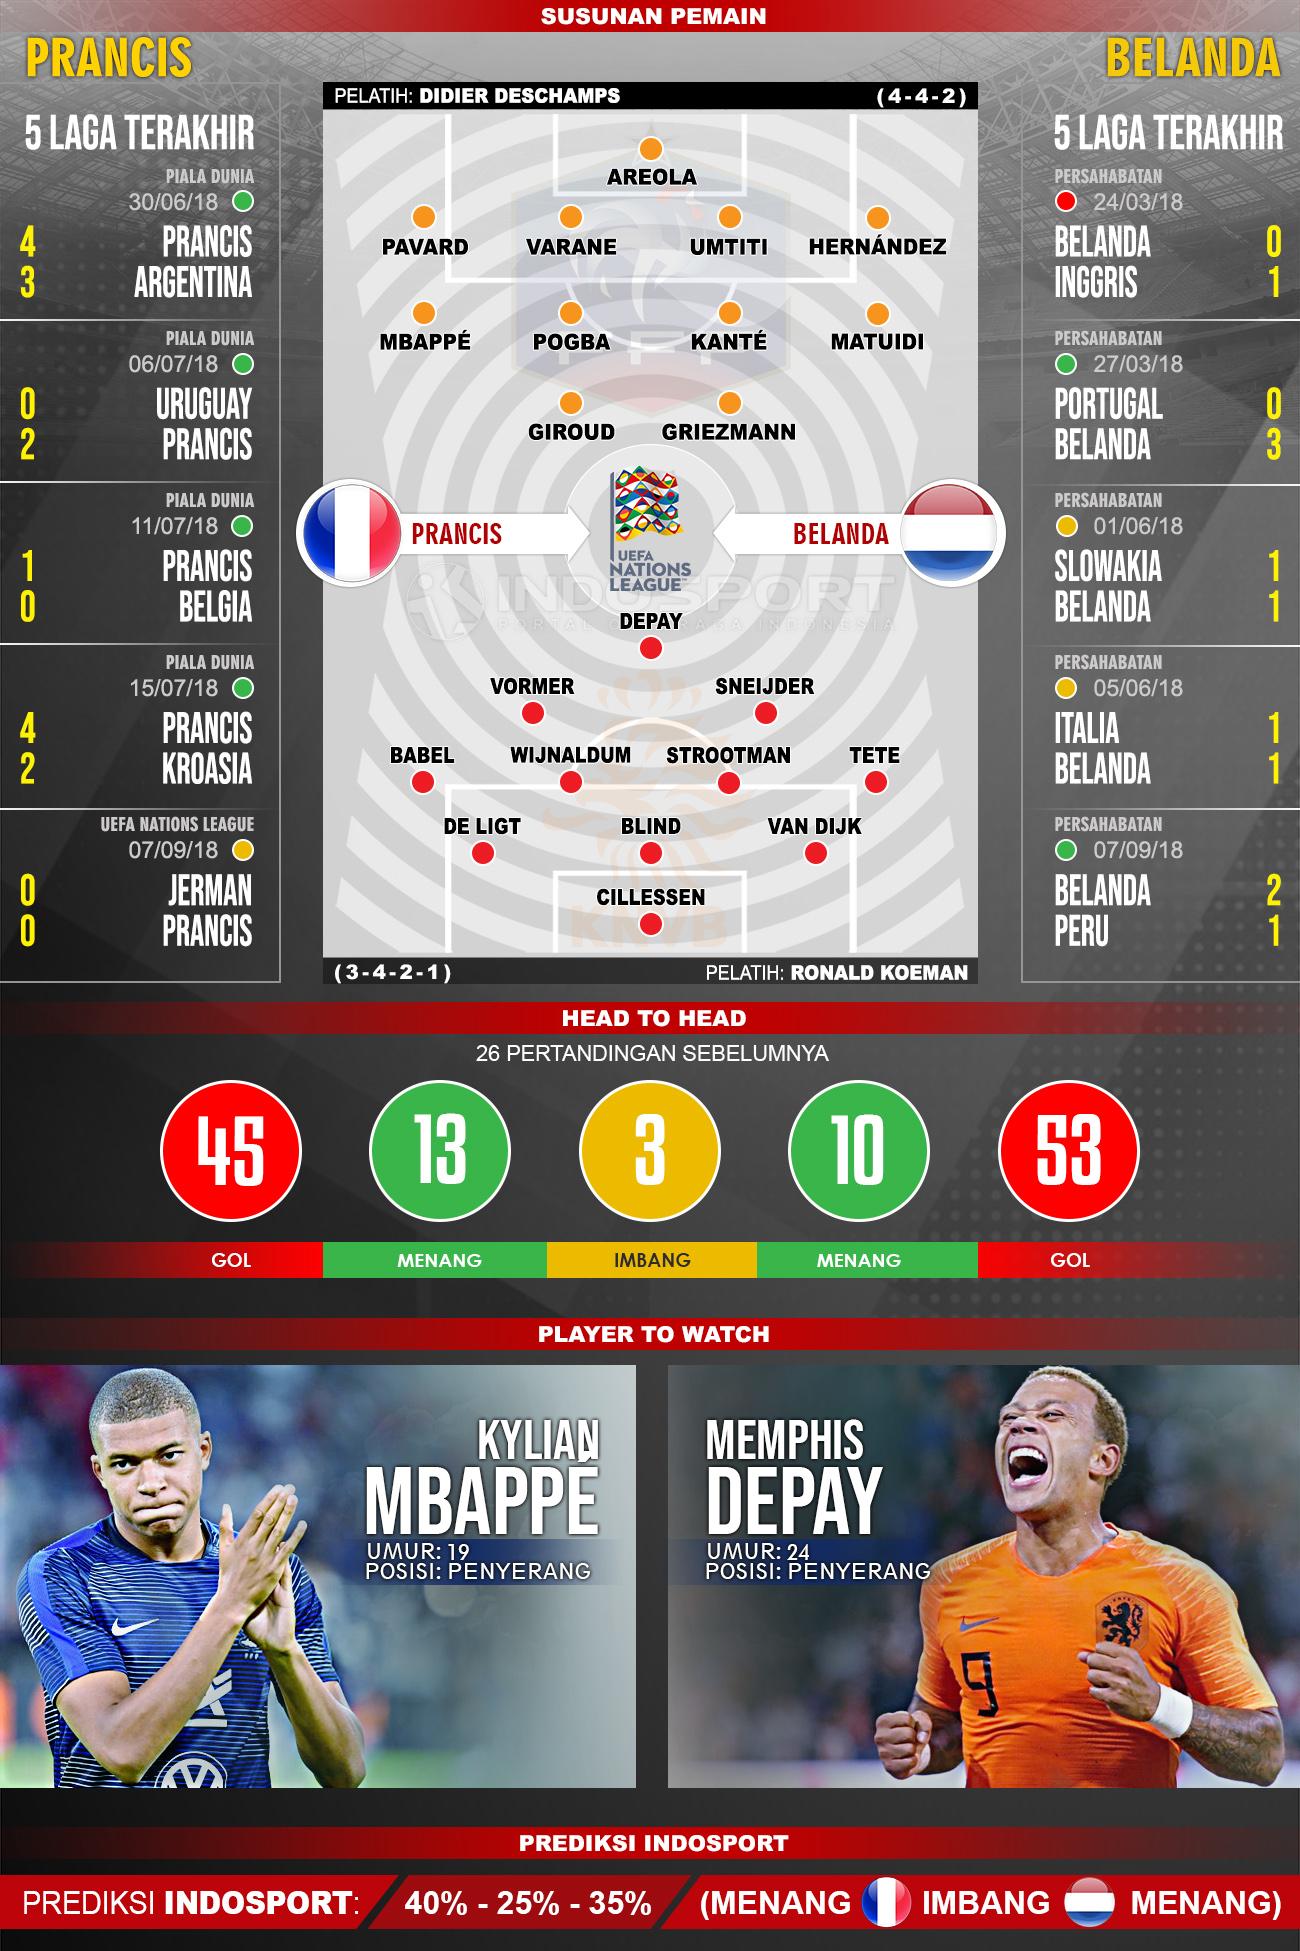 Prancis vs Belanda (Susunan Pemain - Lima Laga Terakhir - Player to Watch - Prediksi Indosport) Copyright: Indosport.com